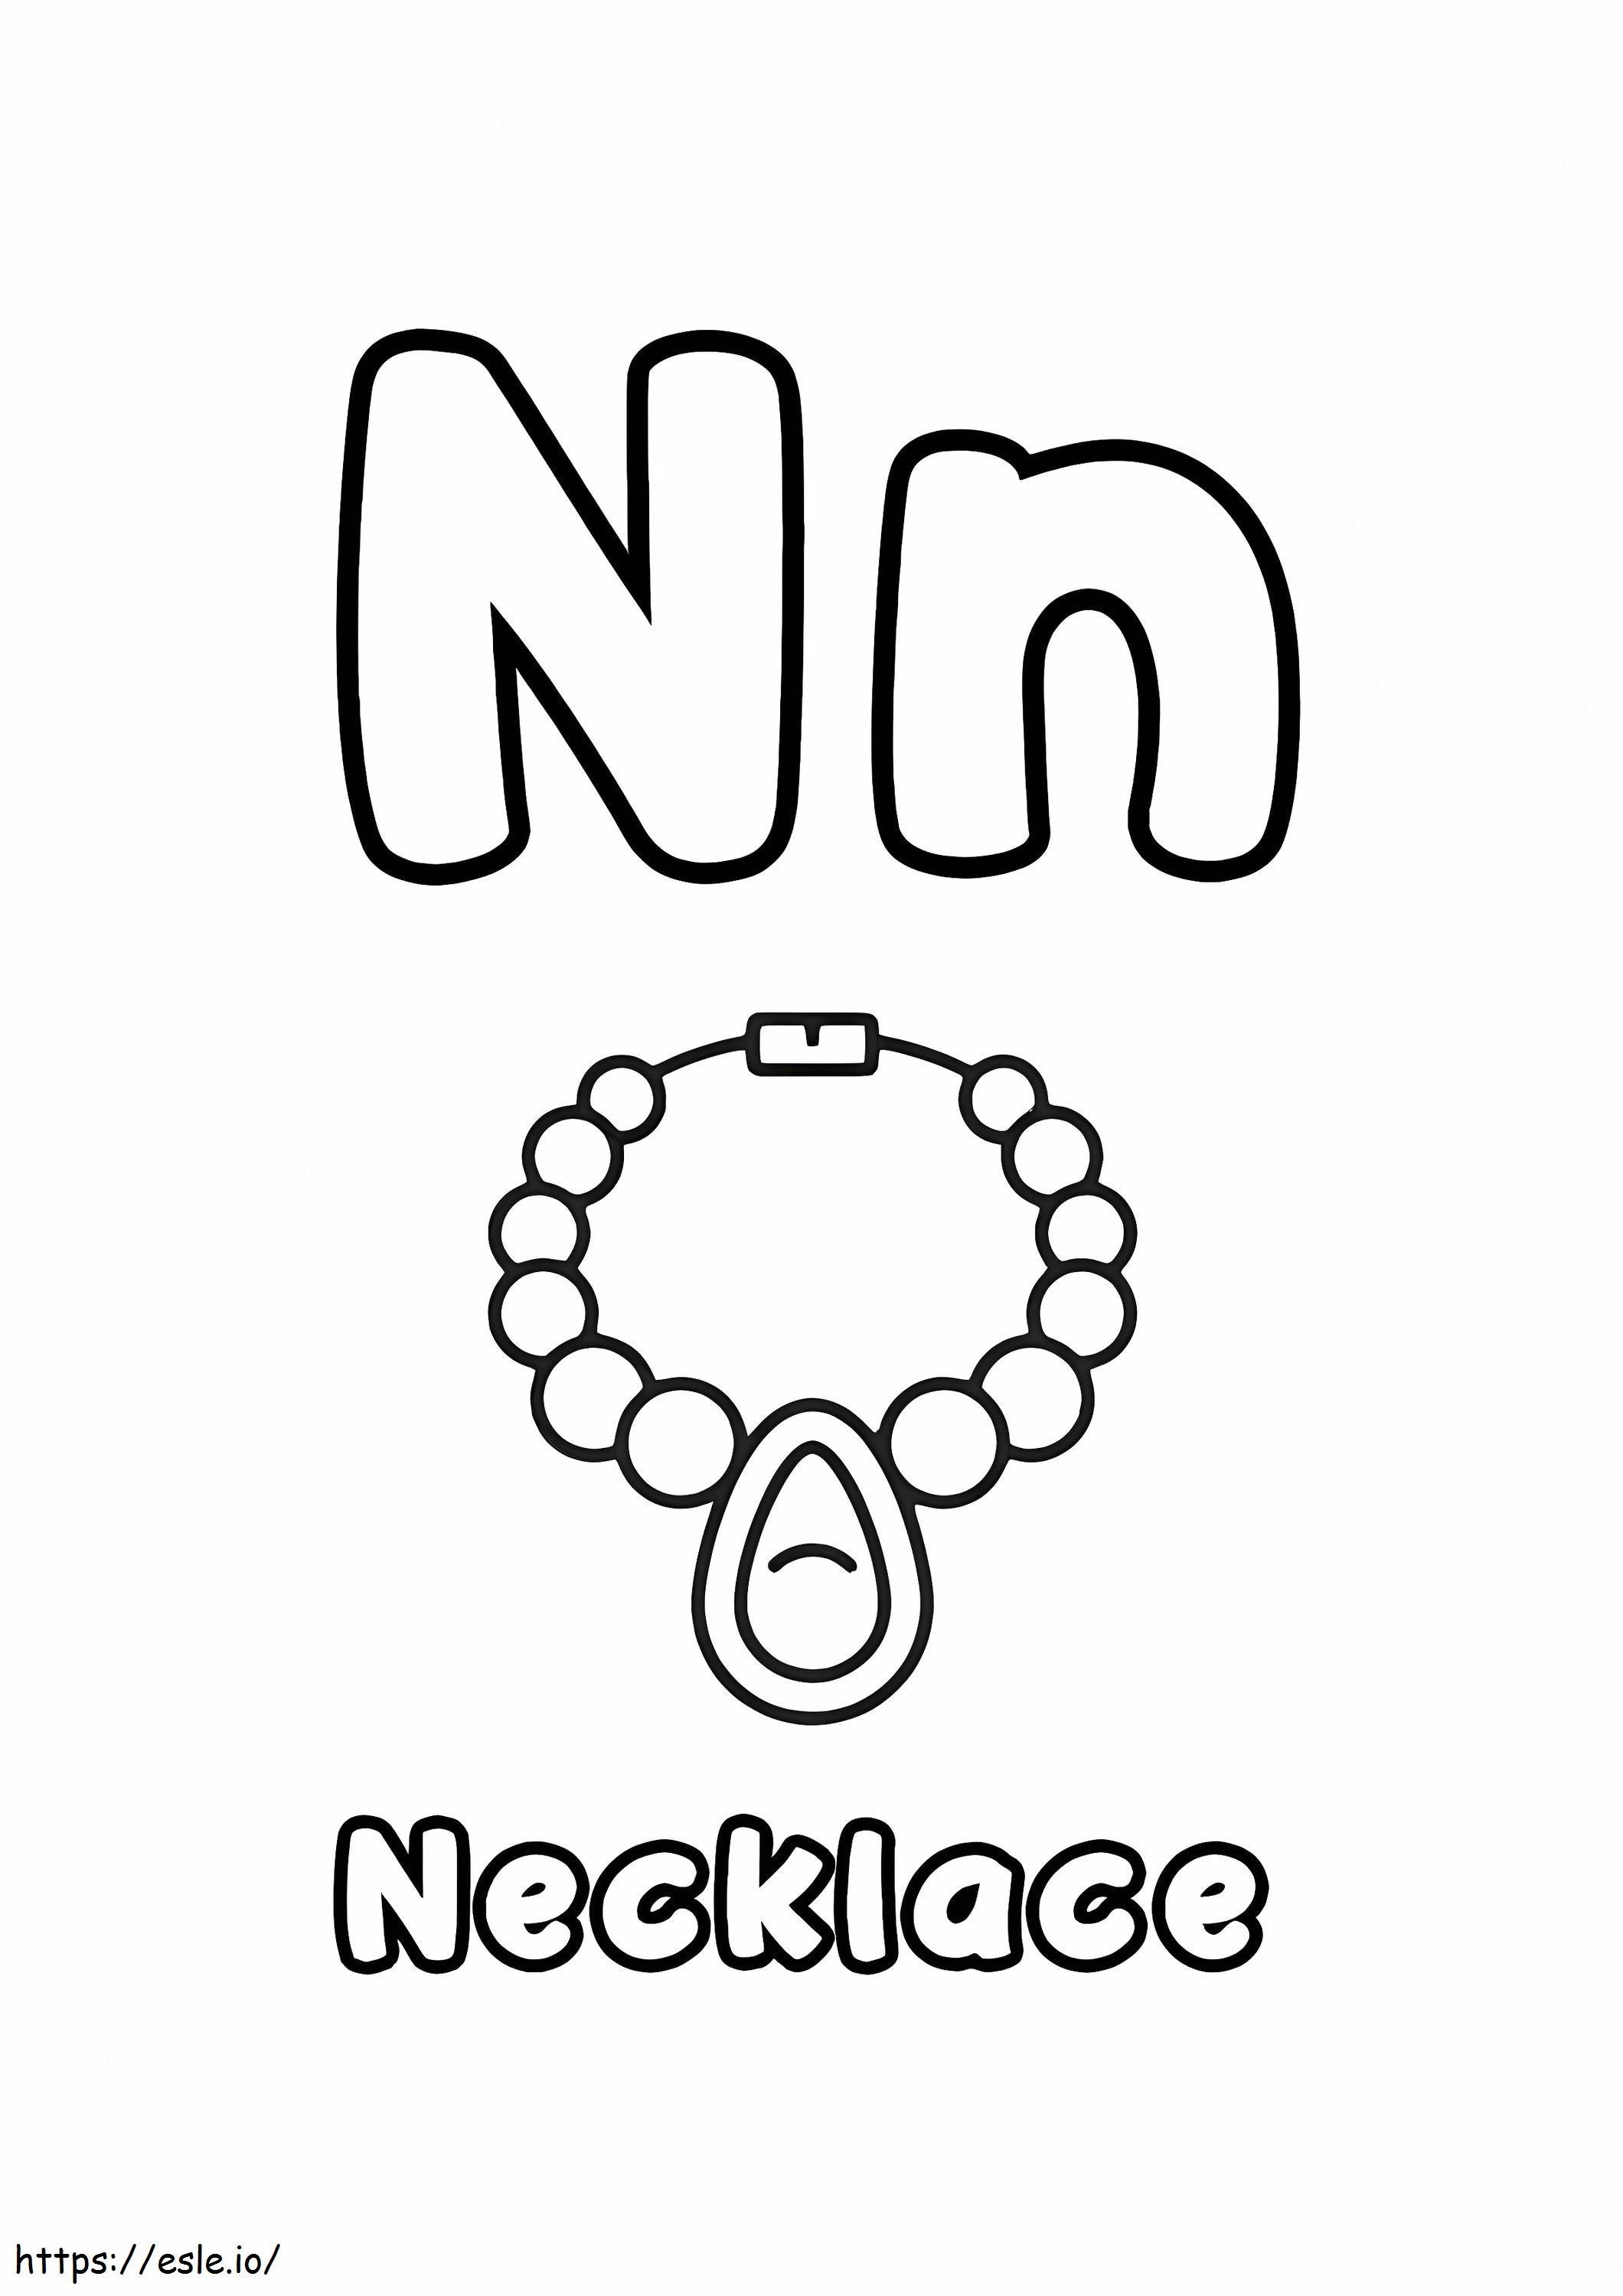 Buchstabe N und Halskette ausmalbilder